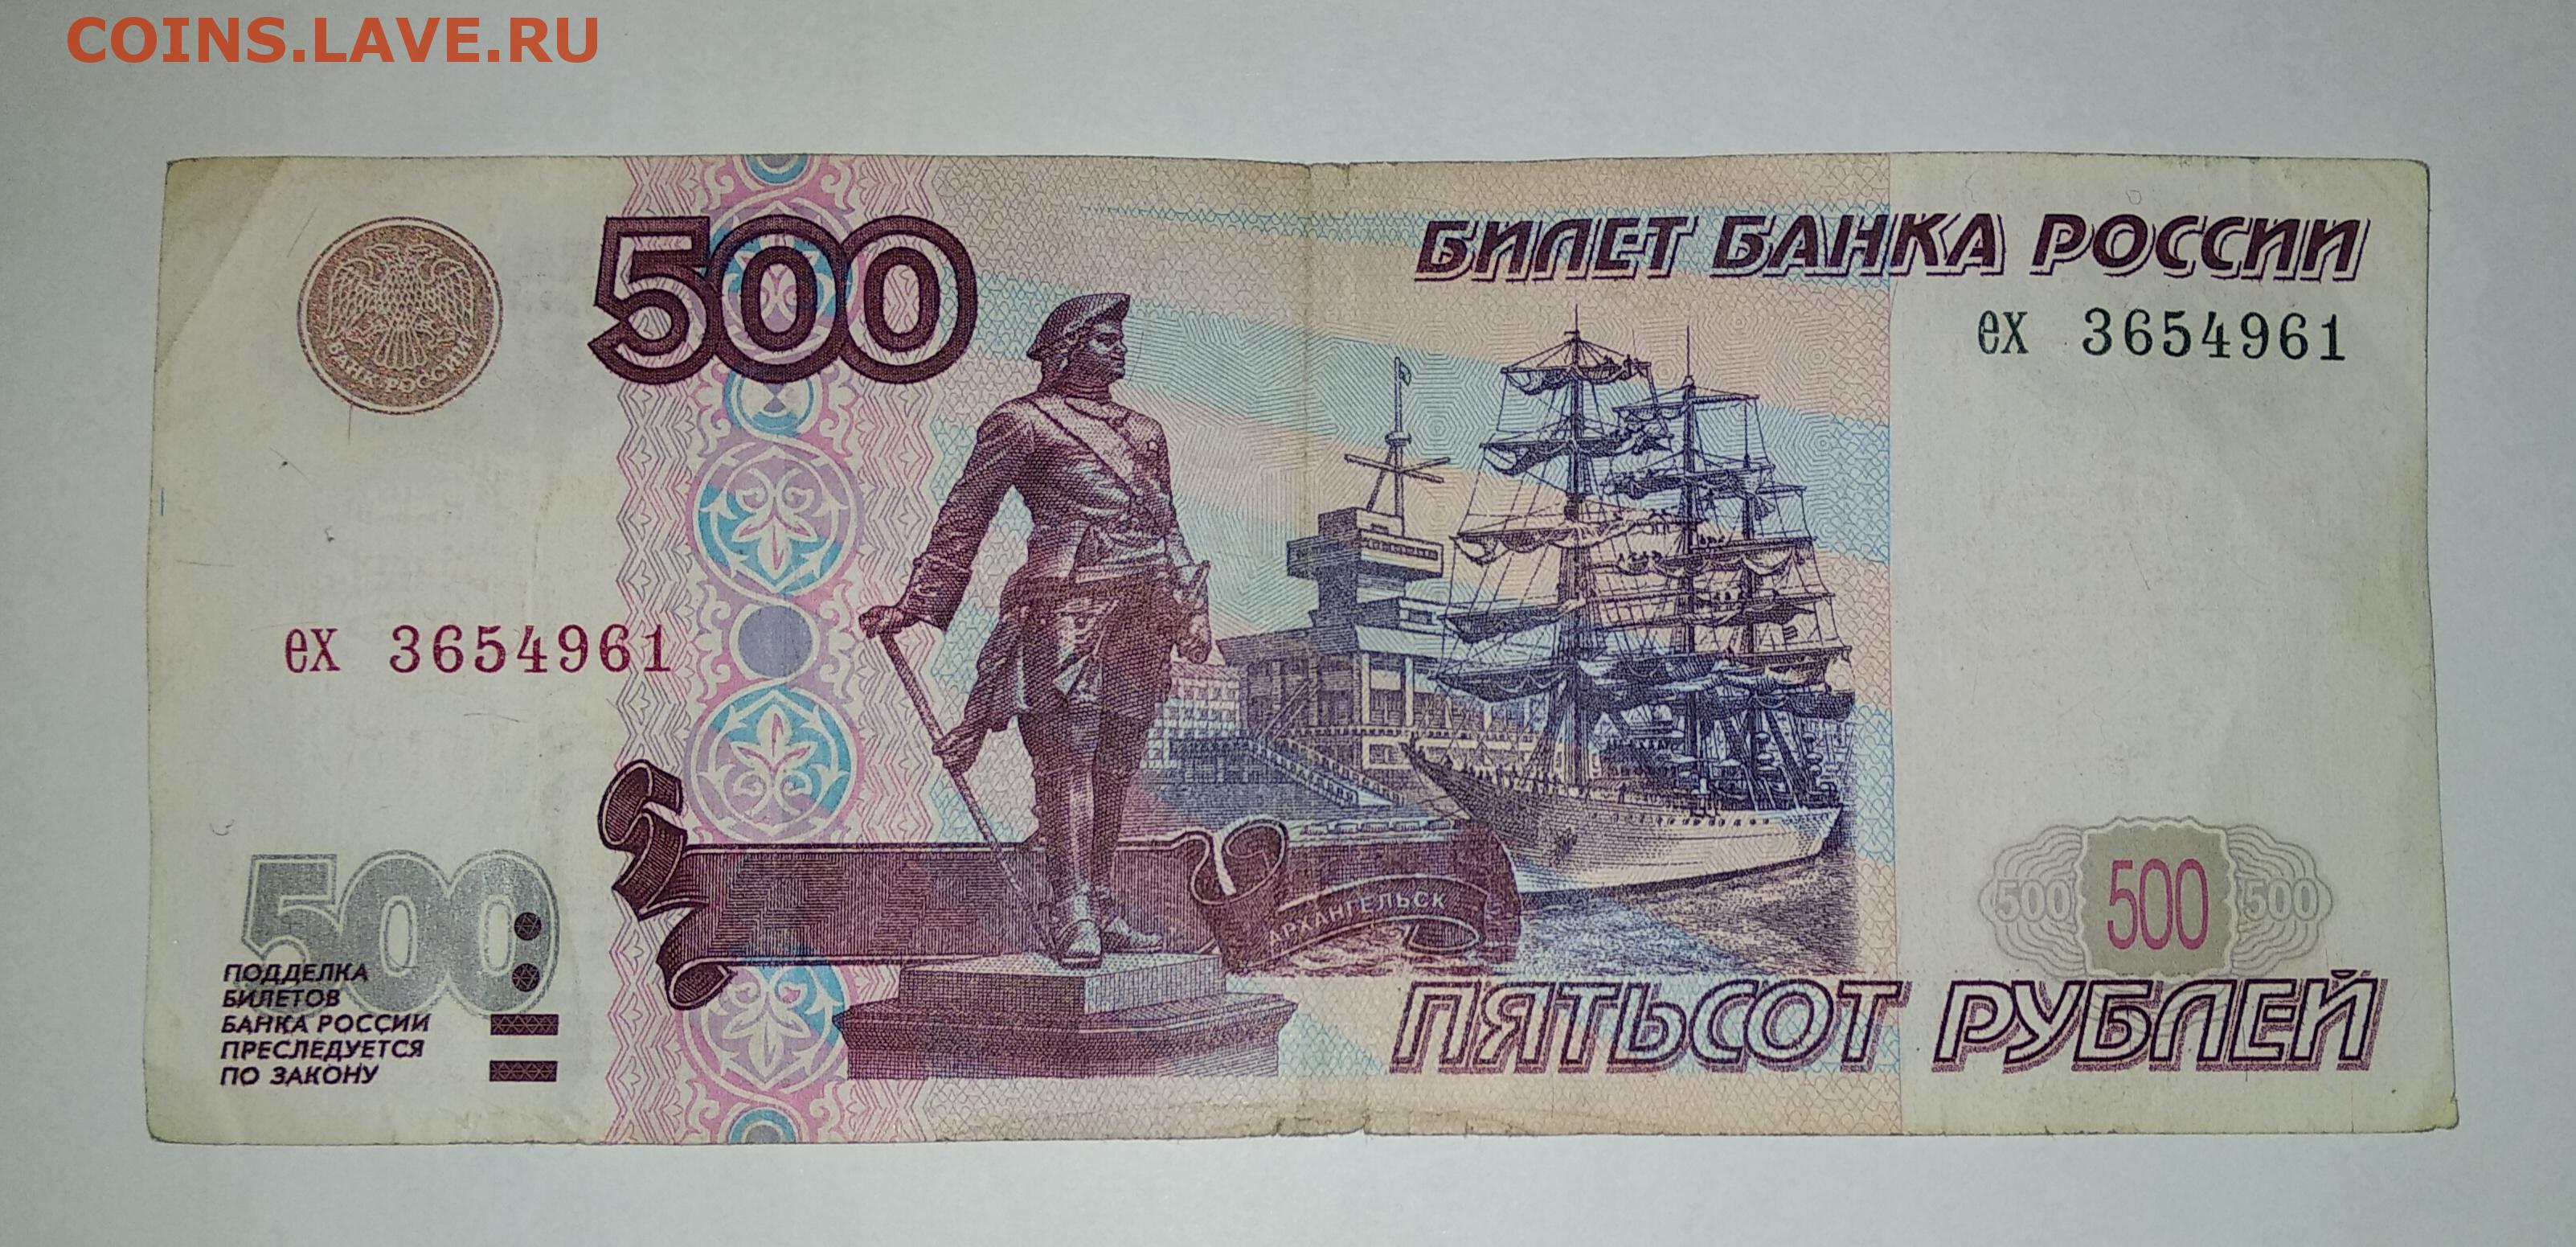 Пособия 500 рублей. Купюра 500 рублей. 500 Рублей 1997. 500 Рублей 1997г. Купюра 500 рублей с корабликом.